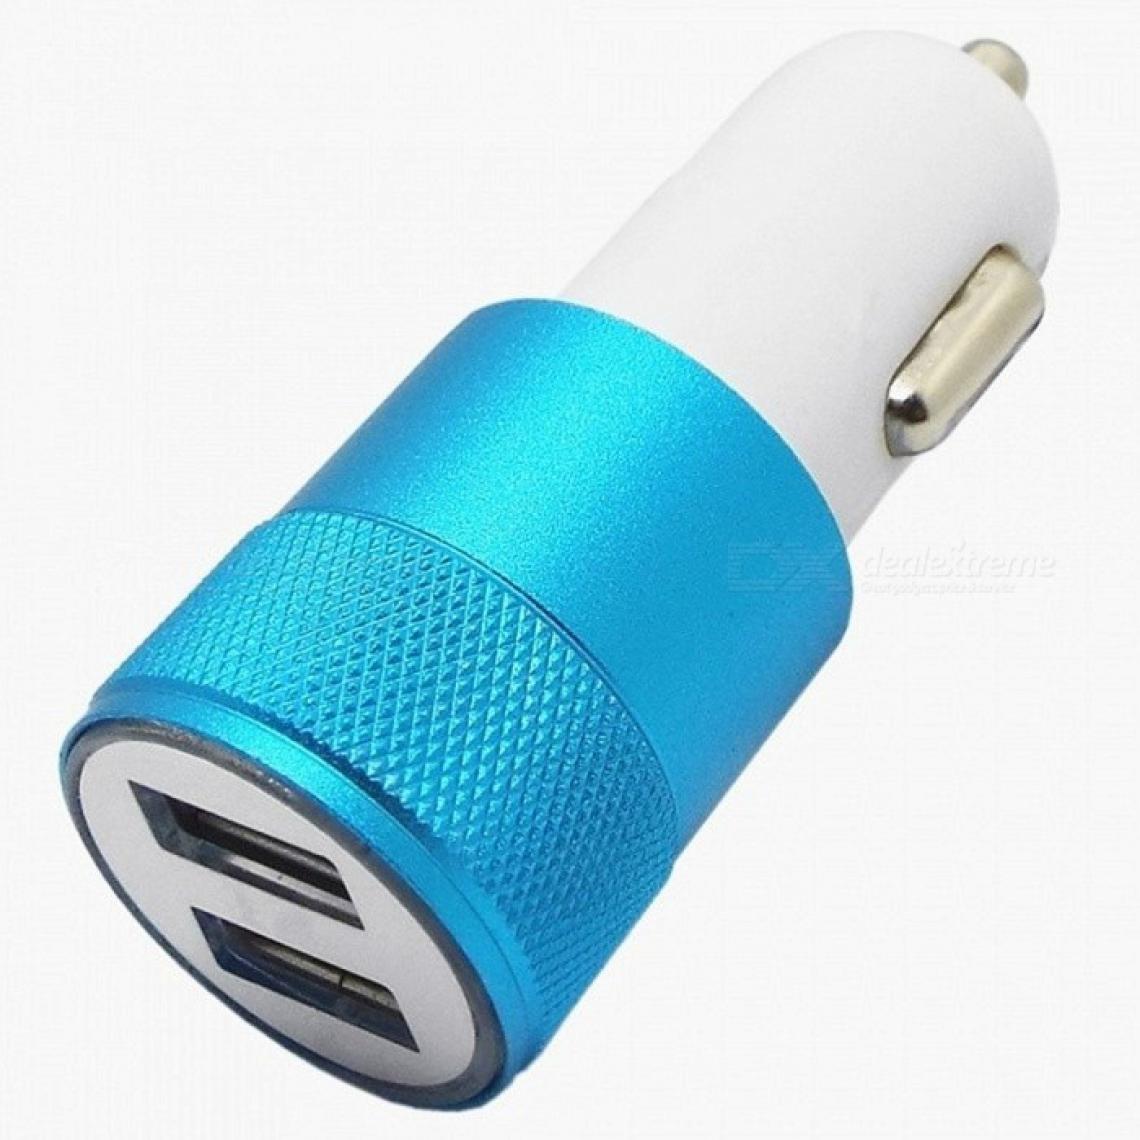 Shot - Double Adaptateur Prise Allume Cigare USB pour "WIKO Y61" Smartphone 2 Ports Voiture Chargeur Couleurs (BLEU) - Chargeur Voiture 12V